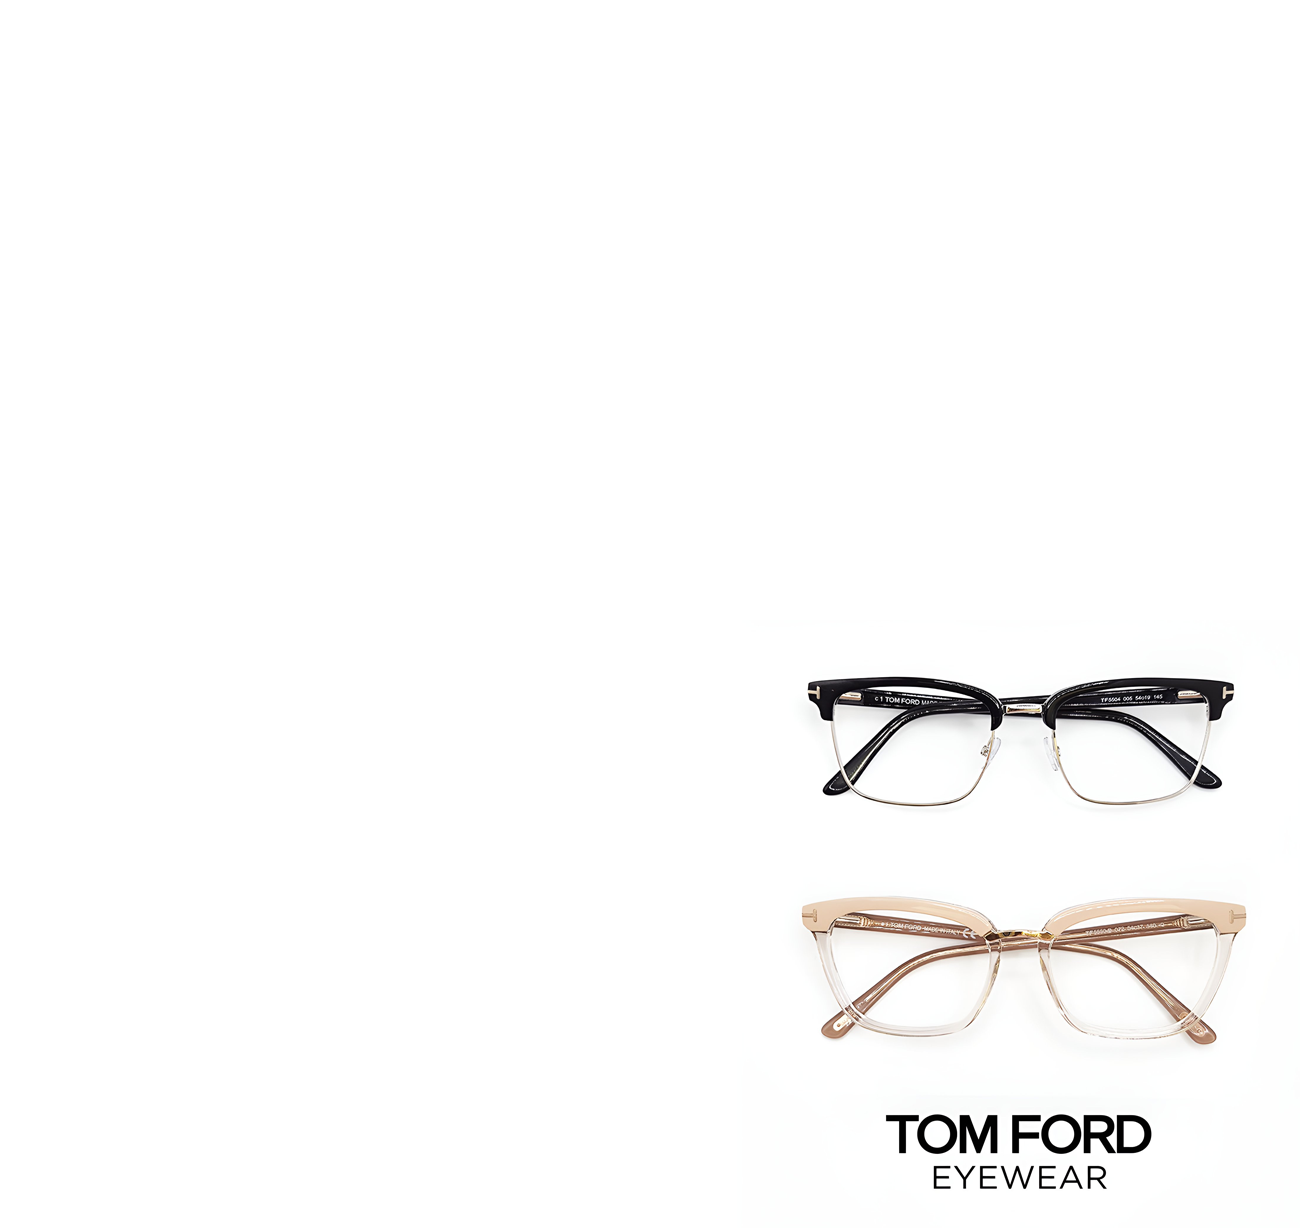 Tom Ford Eyewear - OptoDoc Homepage image